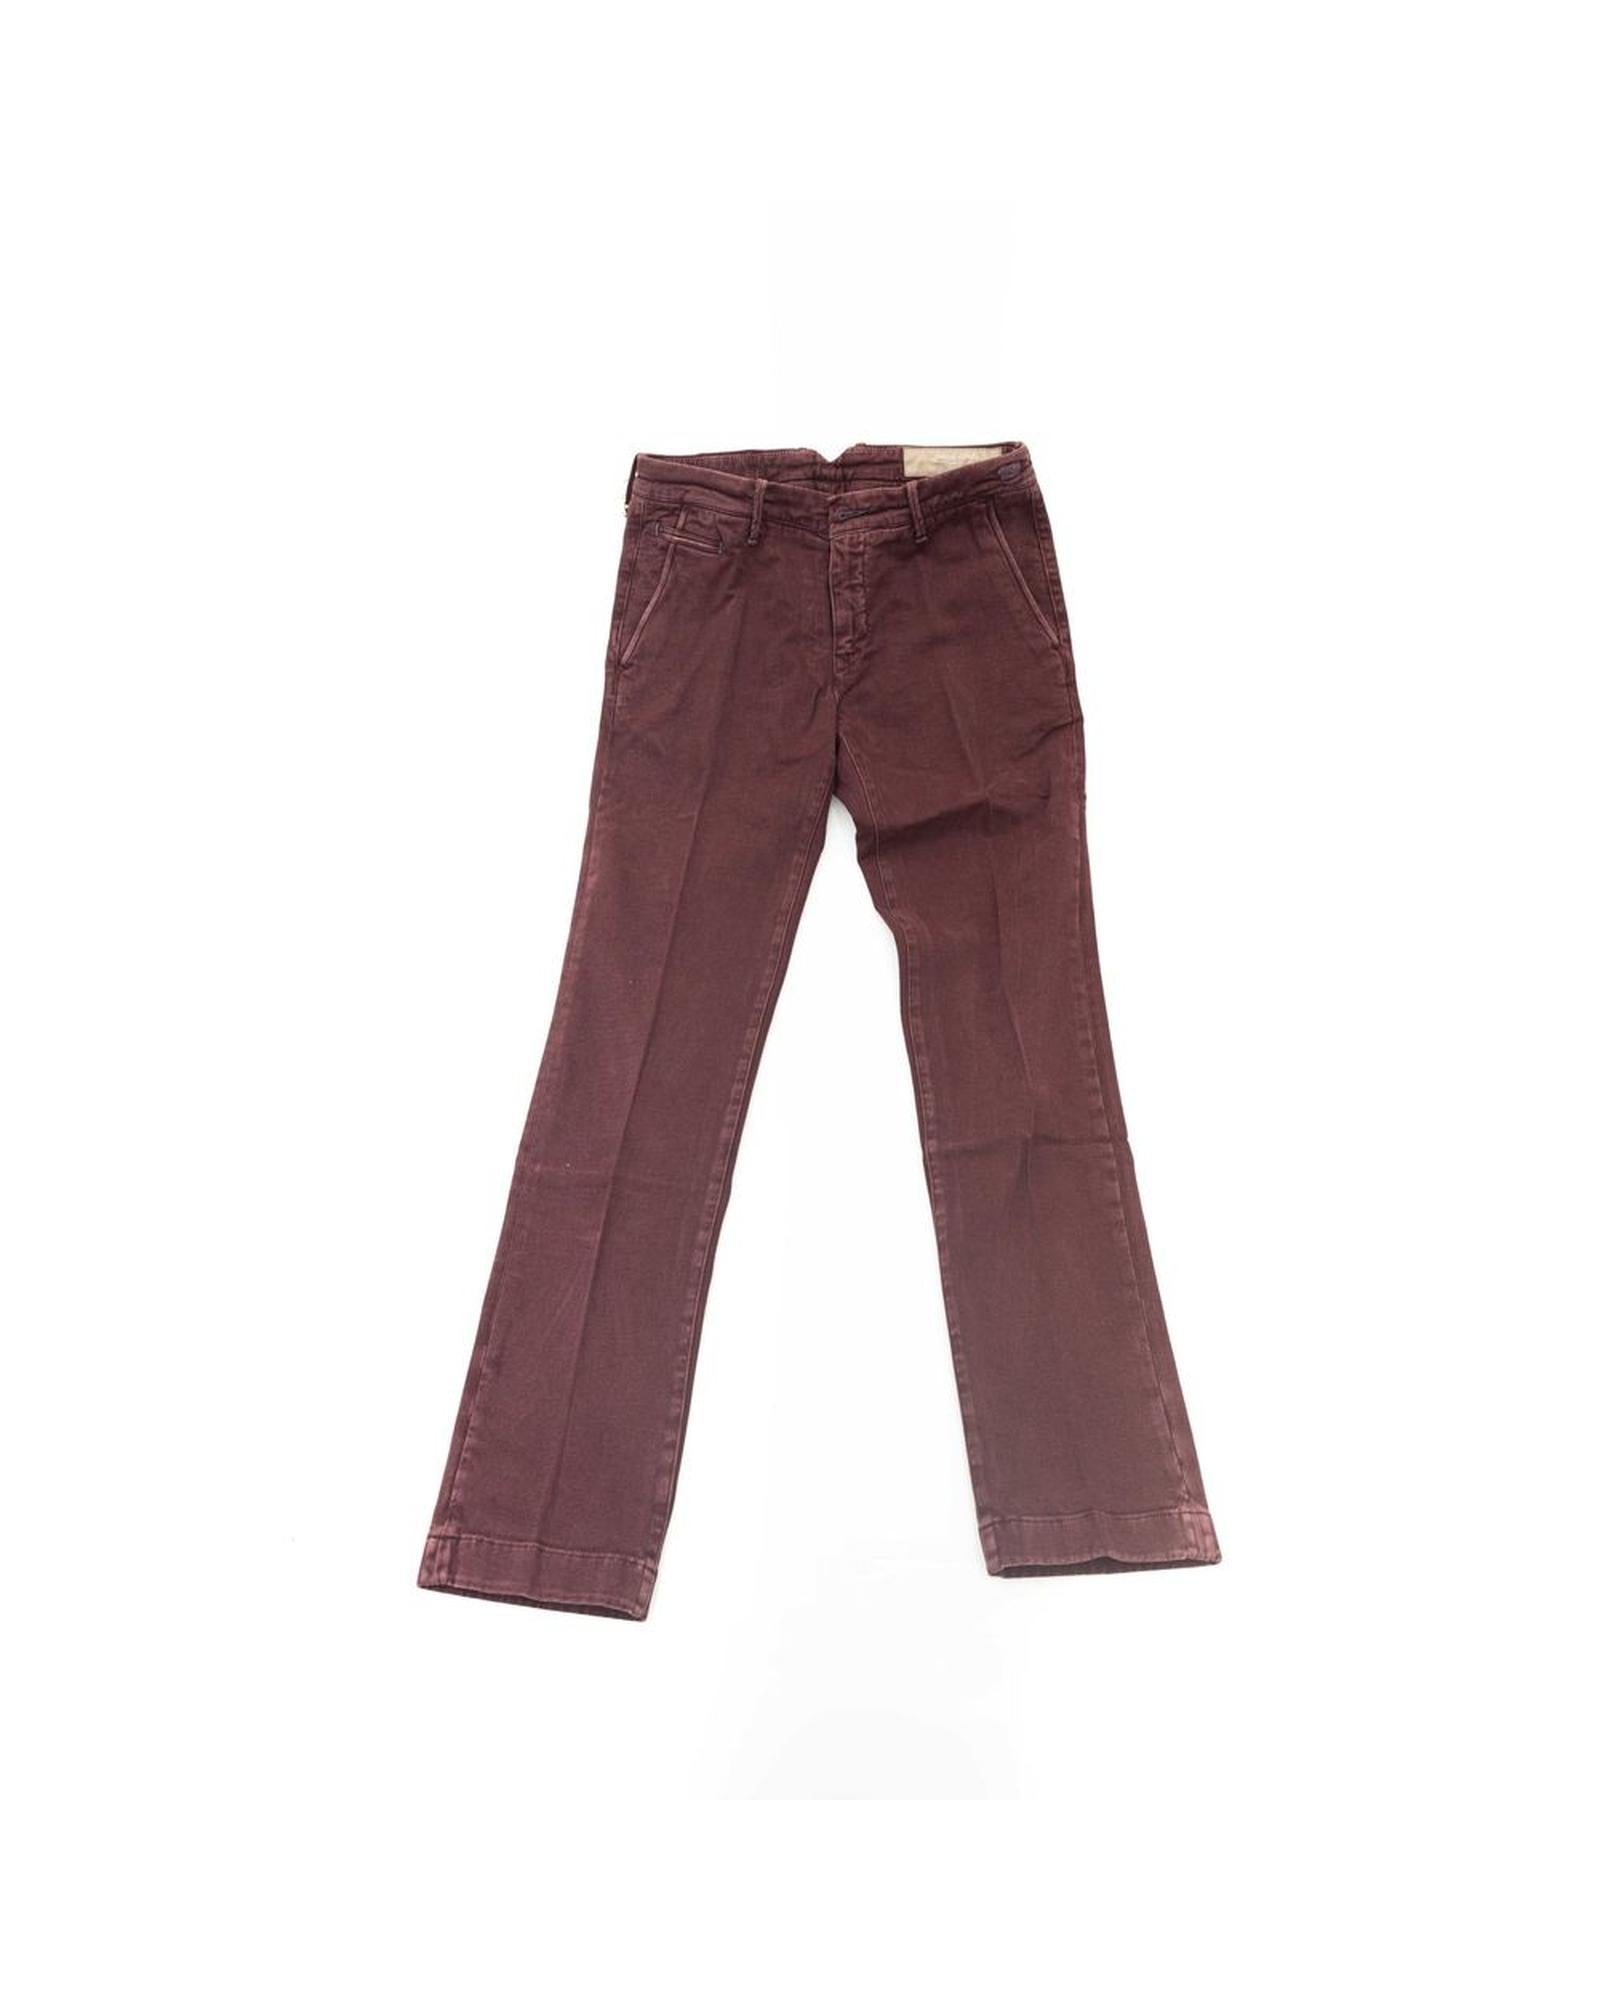 Men's Burgundy Cotton Jeans & Pant - W33 US